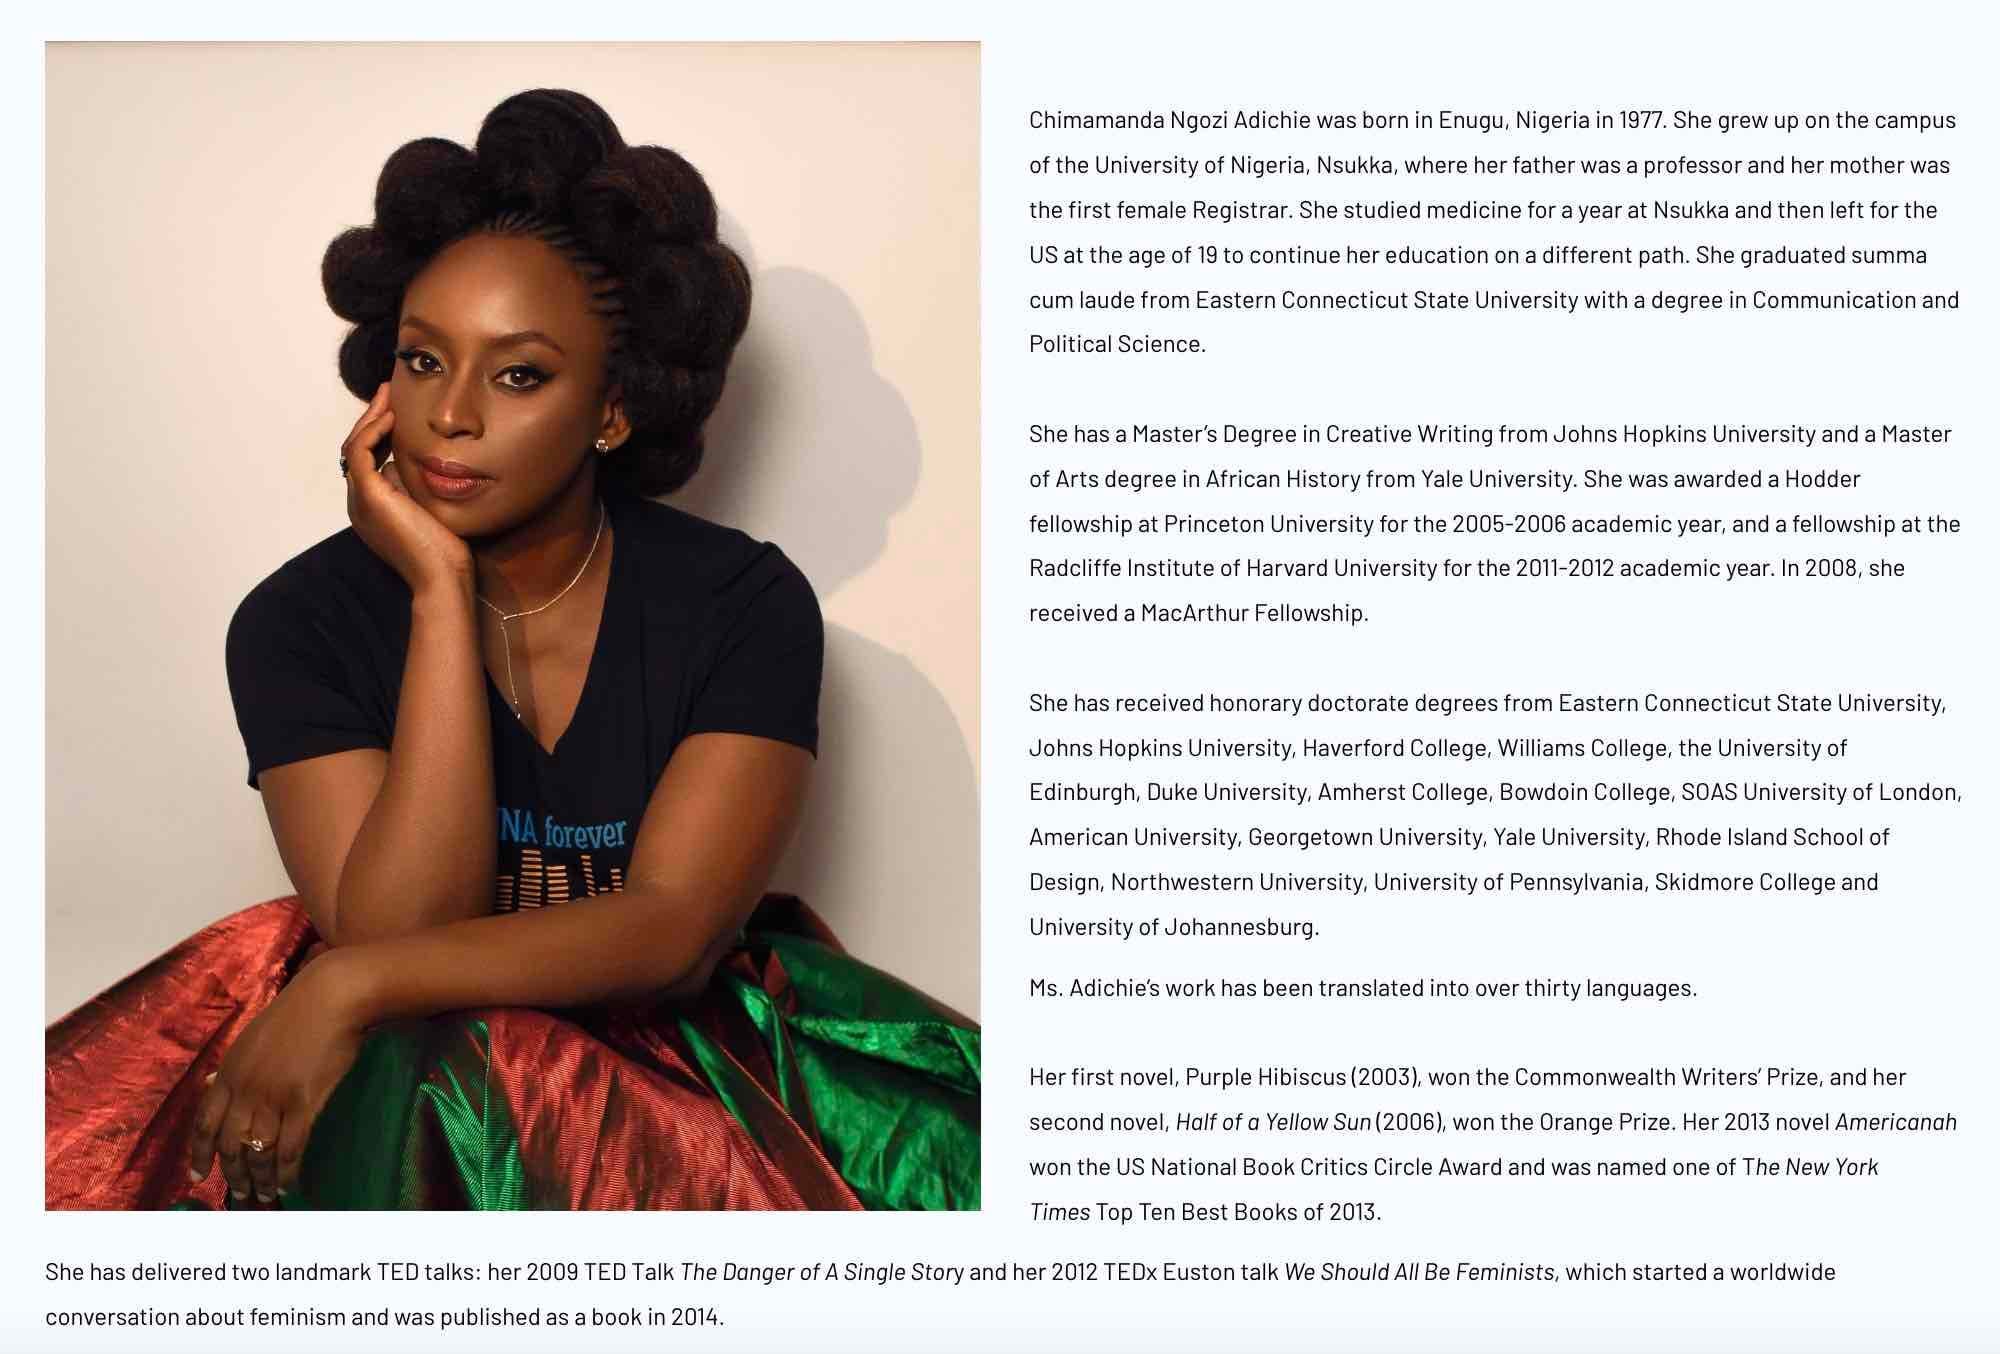 Professional bio example from Chimamanda Ngozi Adichie